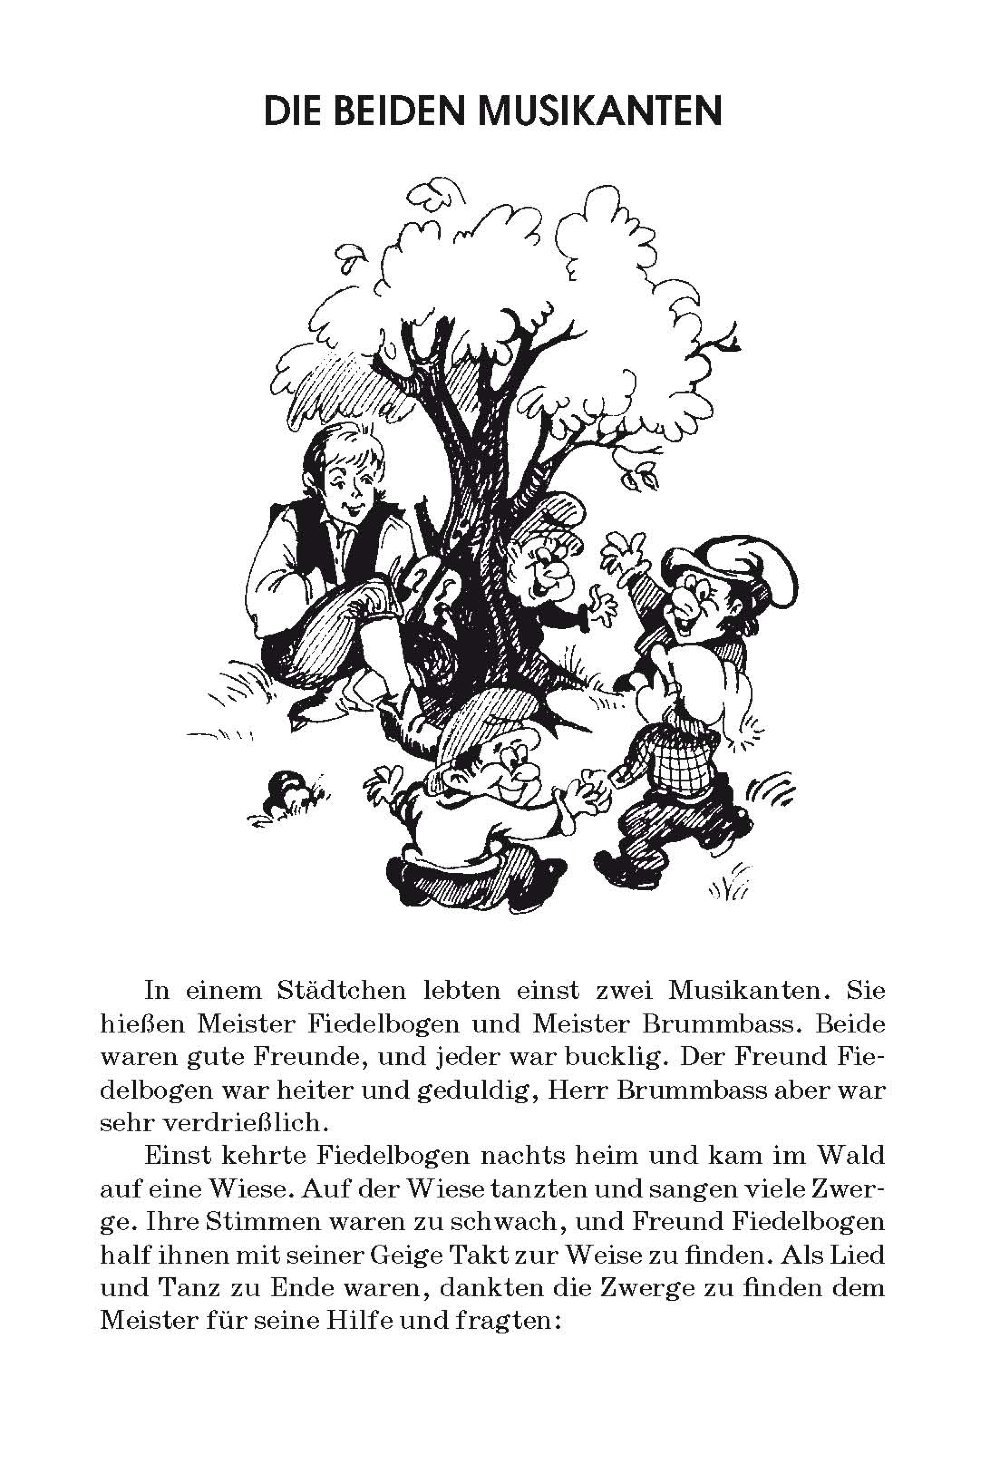 Читаем переводим немецкий. Сказки на немецком языке для начинающих для детей. Сказки на немецком языке для начинающих для чтения. Рассказы для детей на немецком языке. Короткие рассказы на немецком для детей.